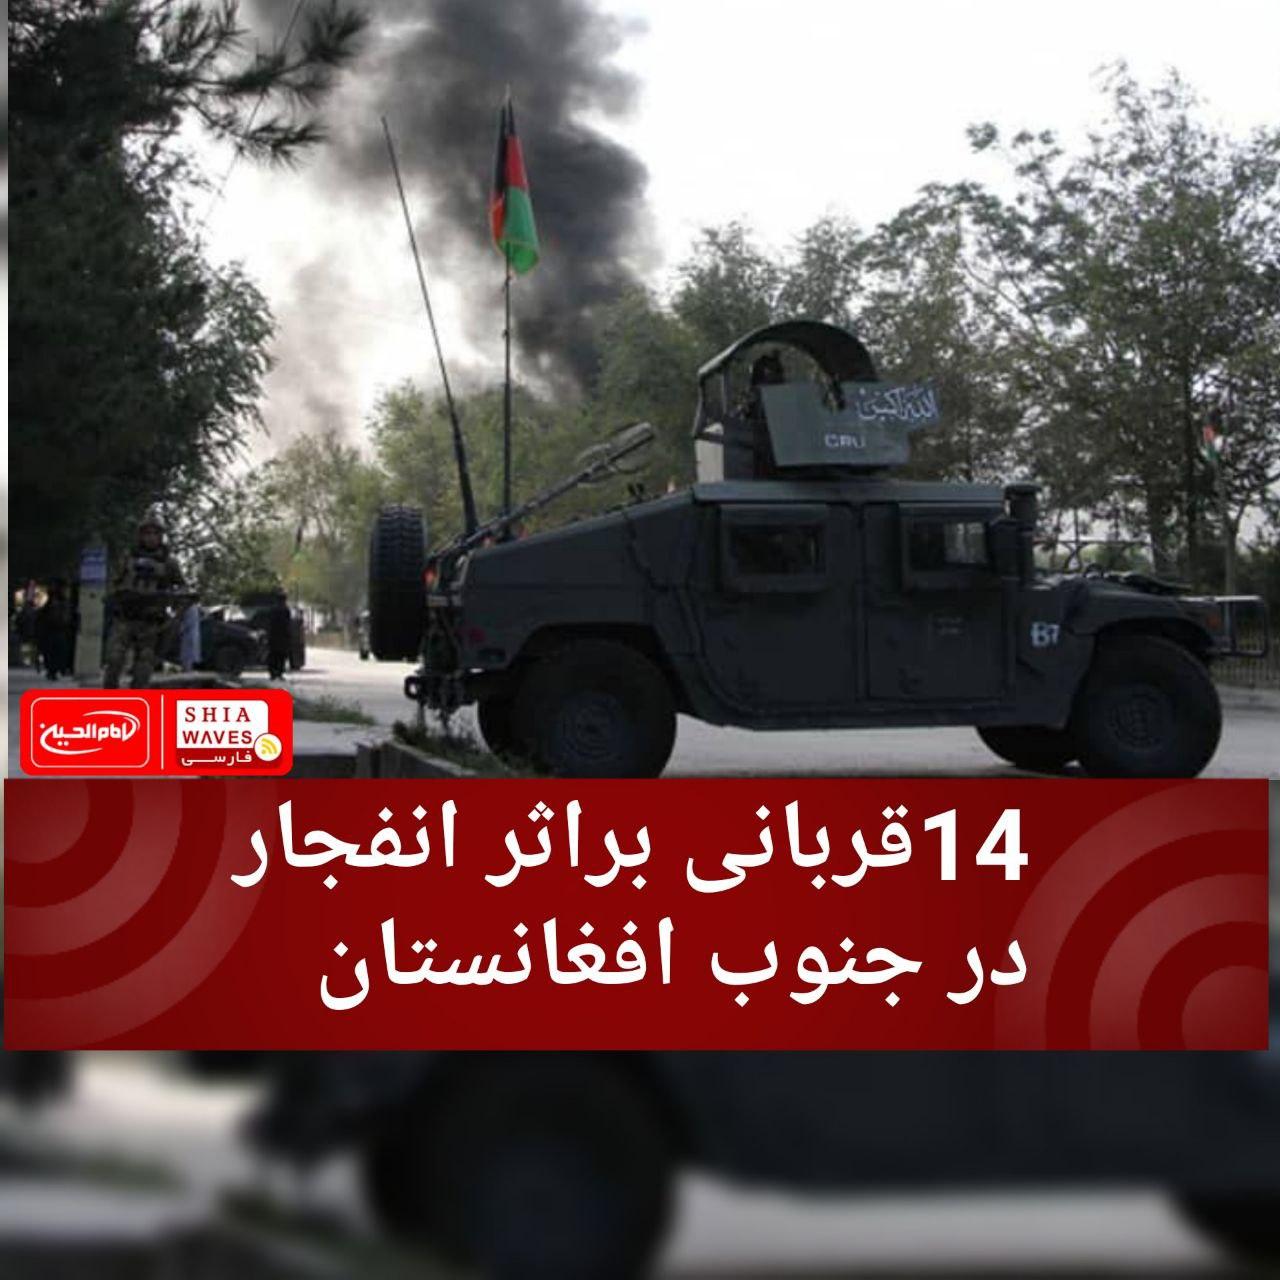 تصویر 14قربانی براثر انفجار در جنوب افغانستان